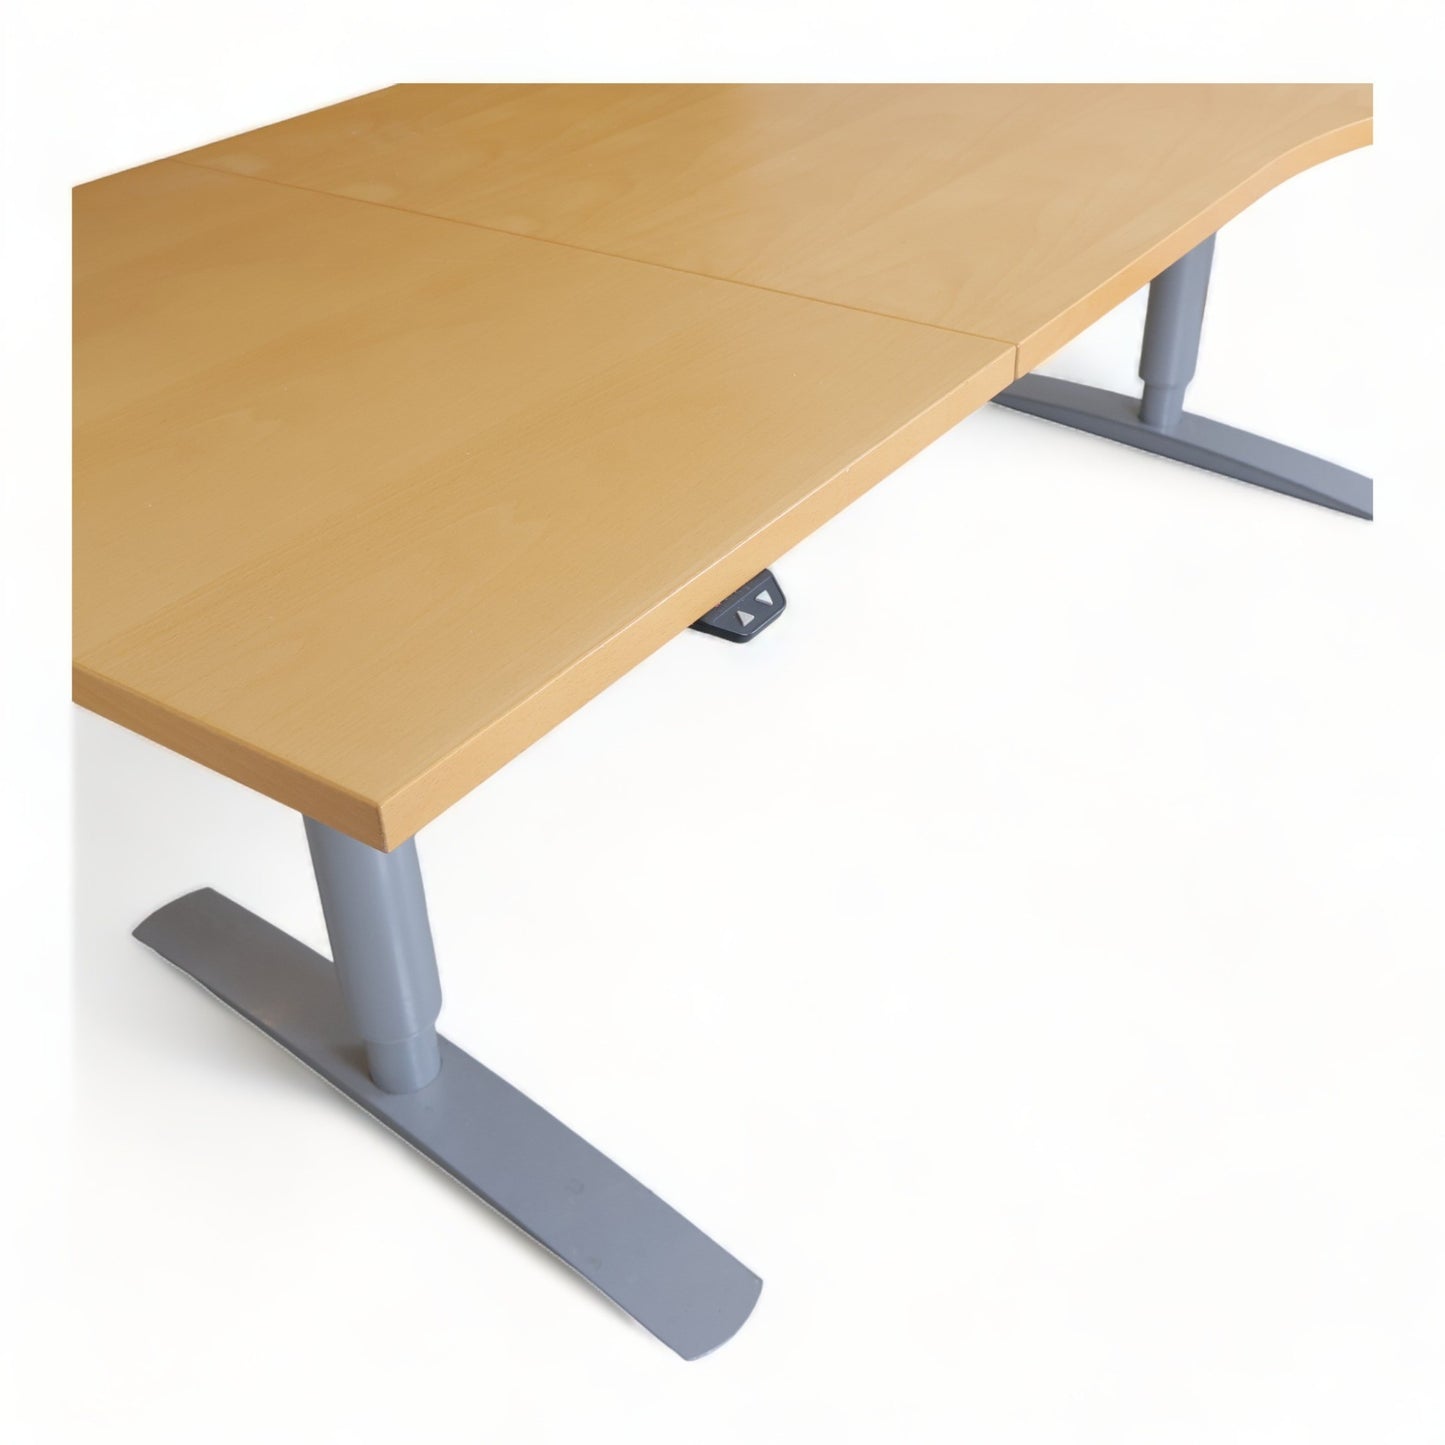 Kvalitetsikret | 220x120, elektrisk hev/senk bord med sving